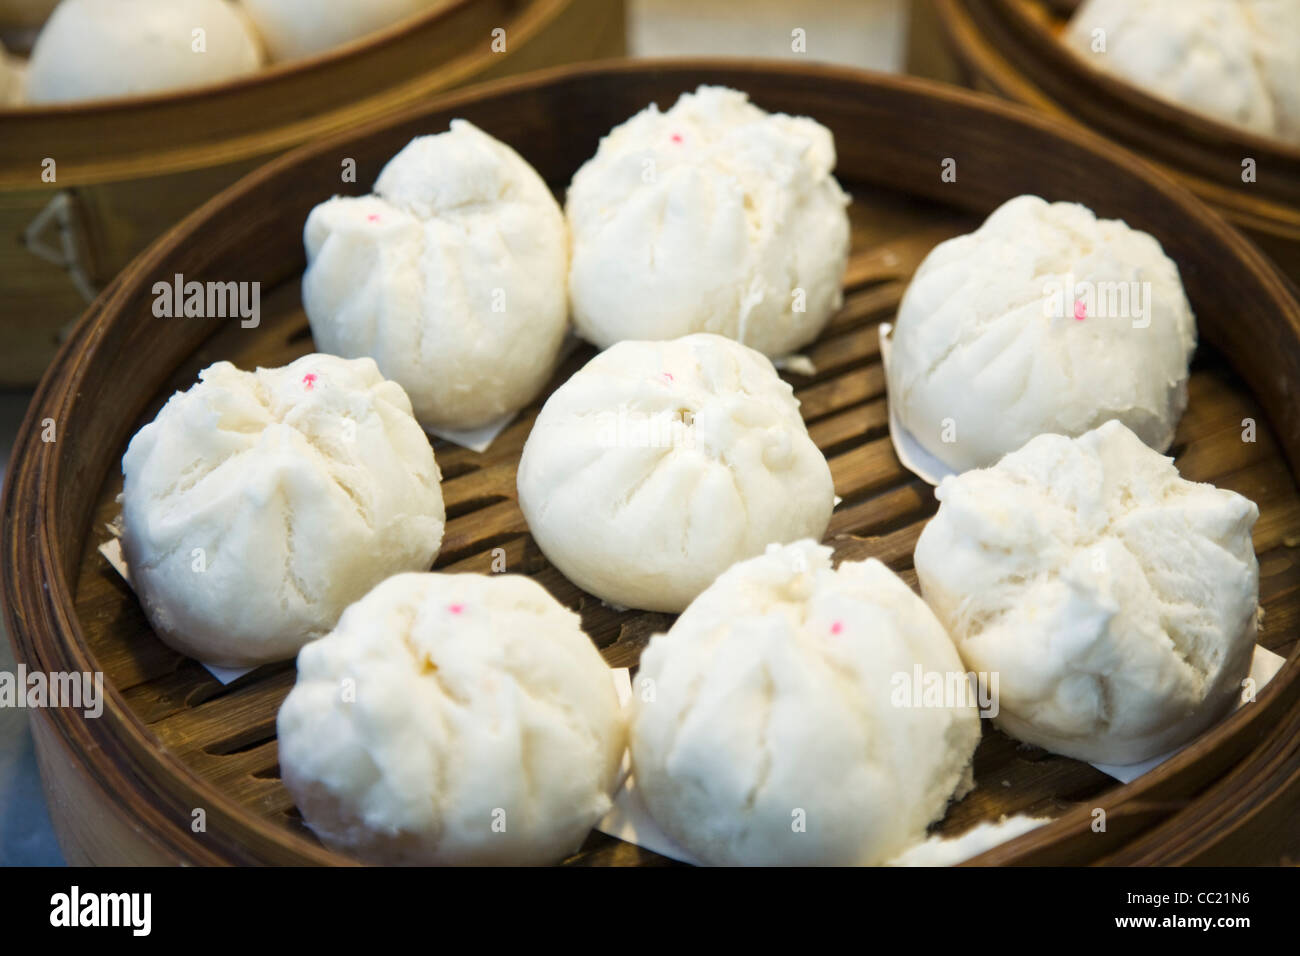 Bao (steamed buns). Chinatown, Bangkok, Thailand Stock Photo